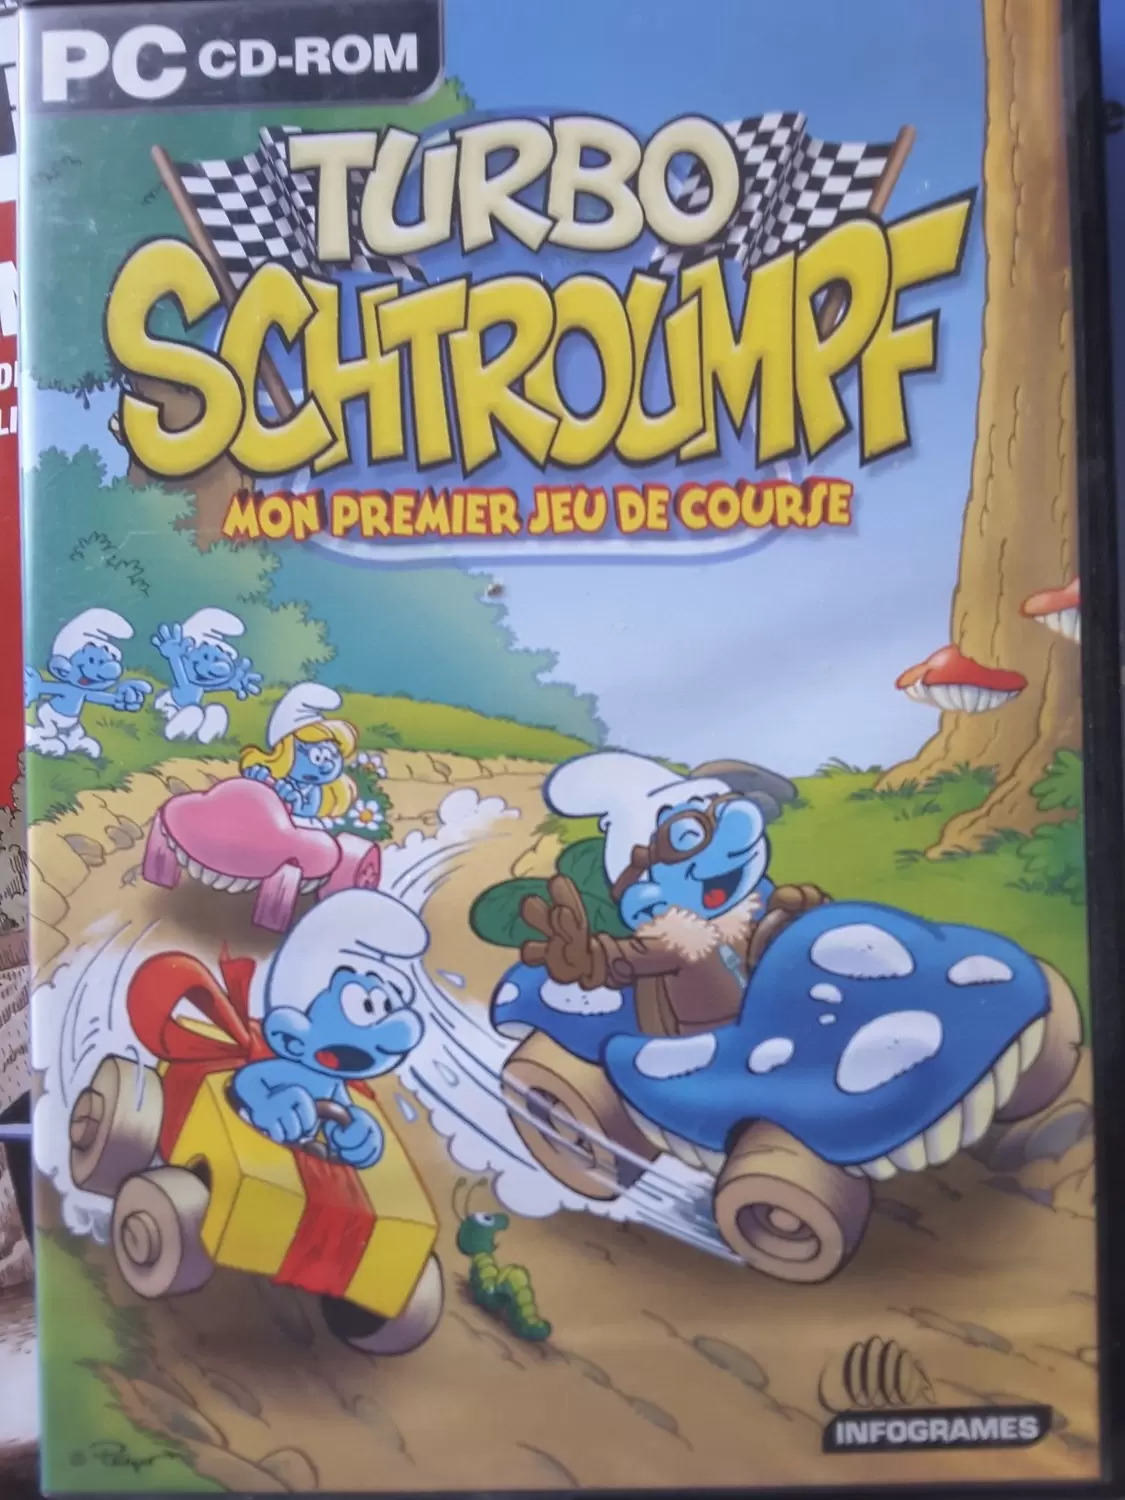 Jeux PC - Turbo Schtroumpf